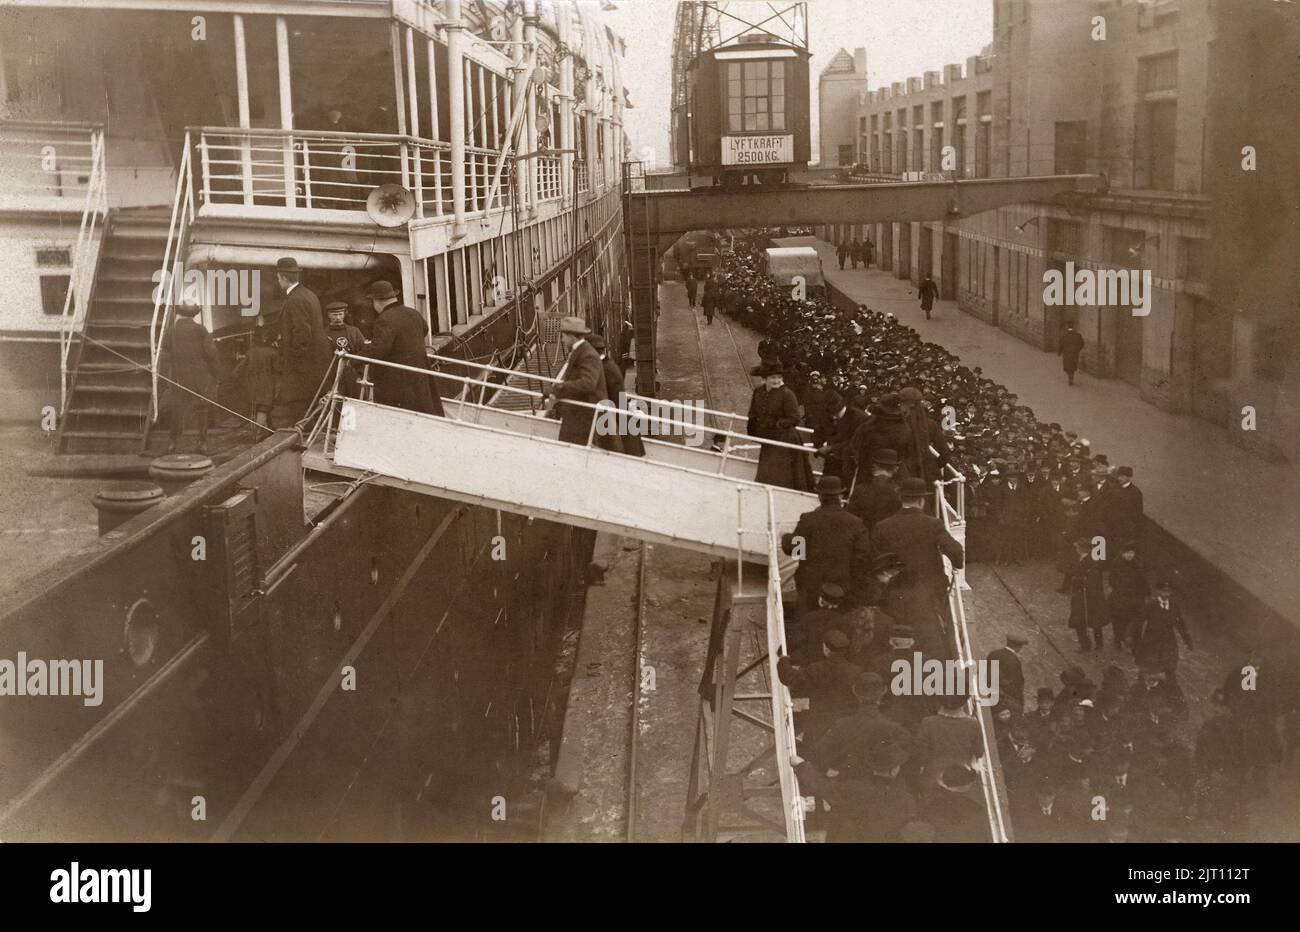 Das Jahr ist 1915. Das schwedisch-amerikanische Linienschiff S/S Stockholm in Göteborg vor ihrer Reise nach New York im dezember 11 1915 auf seiner ersten Reise über den Atlantik. Am Kai stehen Menschen Schlange, um an Bord zu gehen. Stockfoto